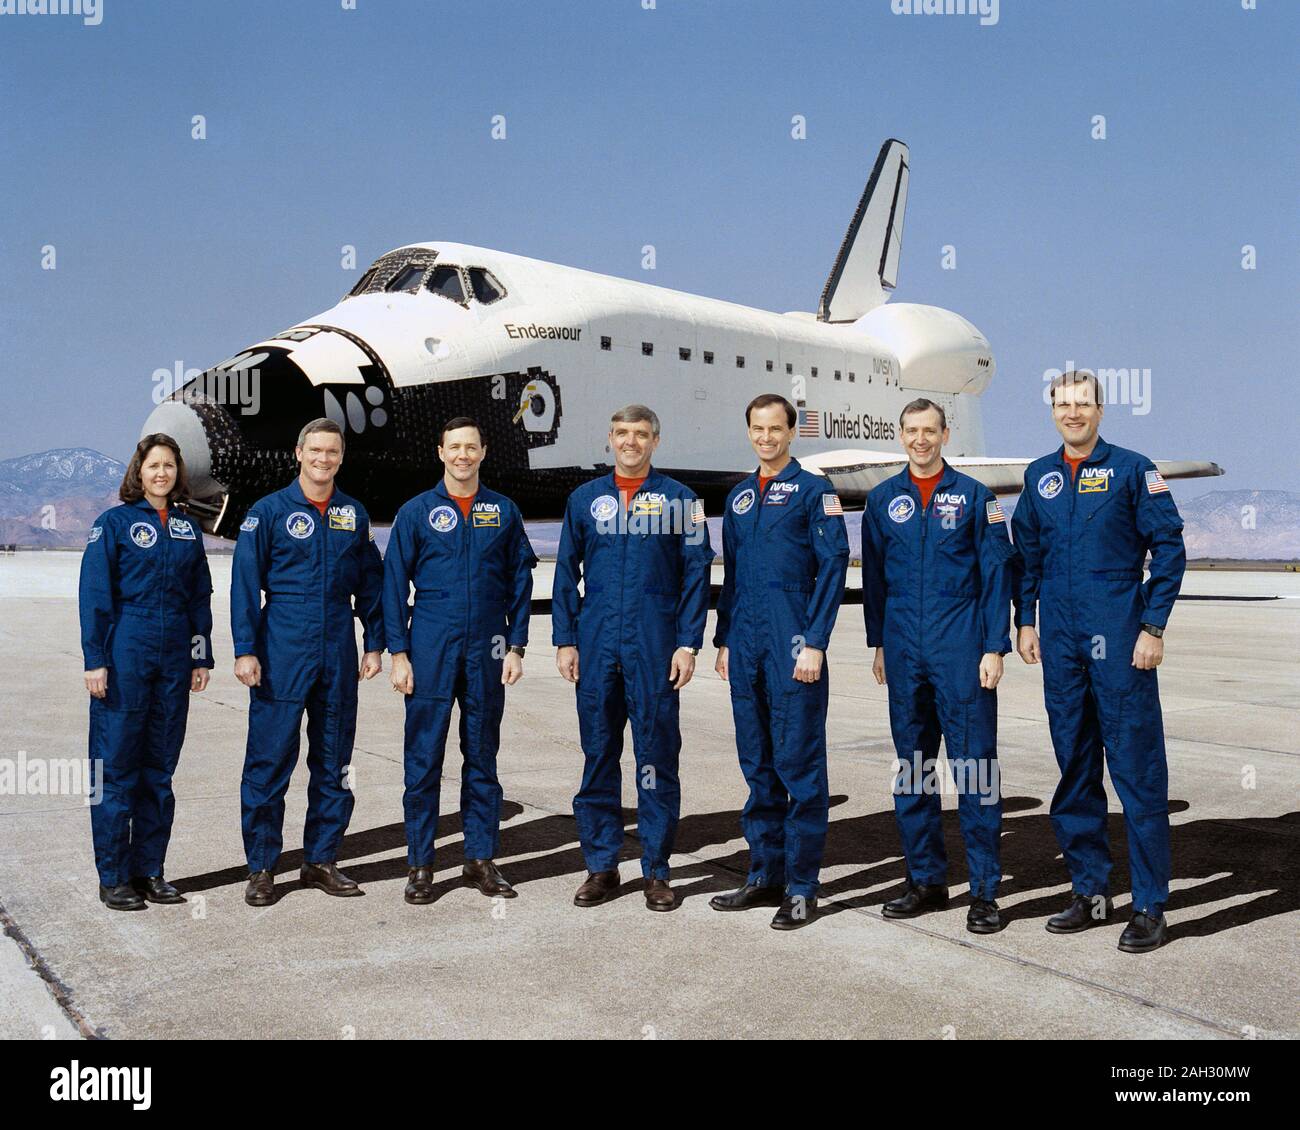 (16 Jan. 1992) - - - Diese sieben NASA-Astronauten sind derzeit für den ersten Flug des Space Shuttle Endeavour, im Hintergrund zu sehen. Daniel C. Brandenstein, Mitte, wird Mission Commander; und Kevin S. Chilton, dritter von rechts, ist Pilot. Mission Spezialisten sind, nach rechts, Kathryn Thornton, Bruce Melnick, Pierre Thout, Thomas Akers und Richard Hieb. Links Stockfoto